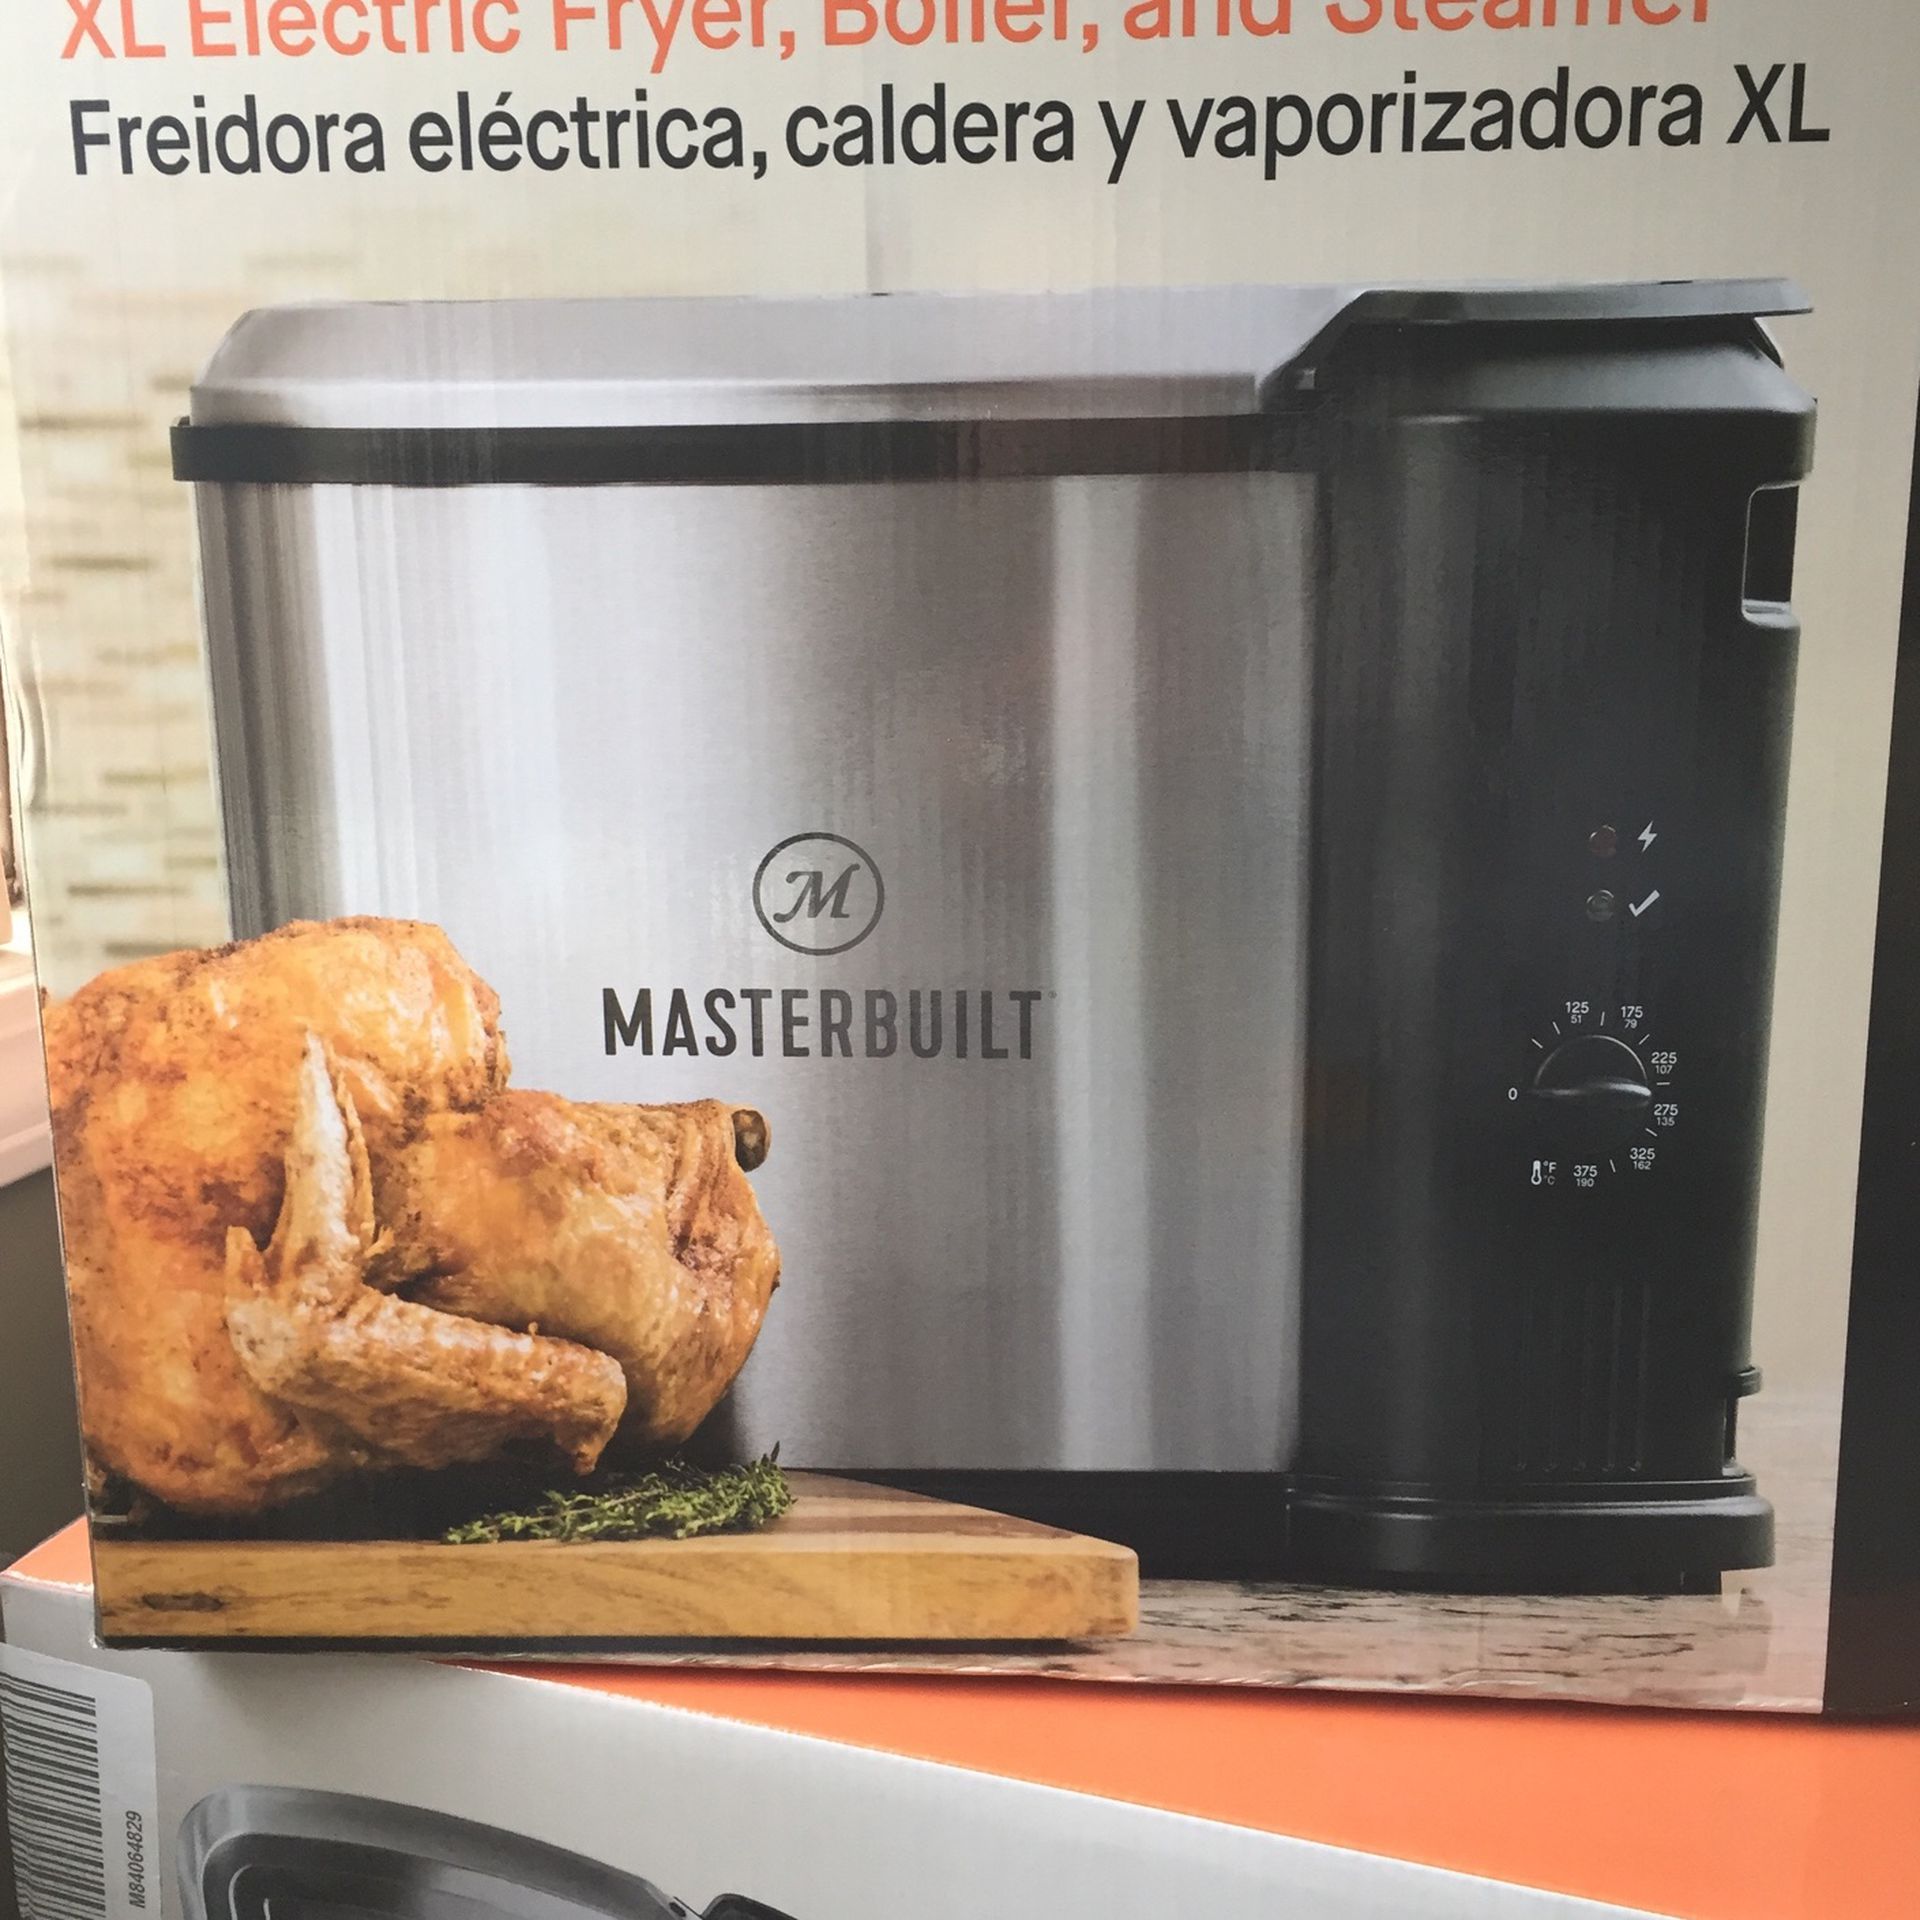 Masterbuilt Electric Fryer, Boiler & Steamer